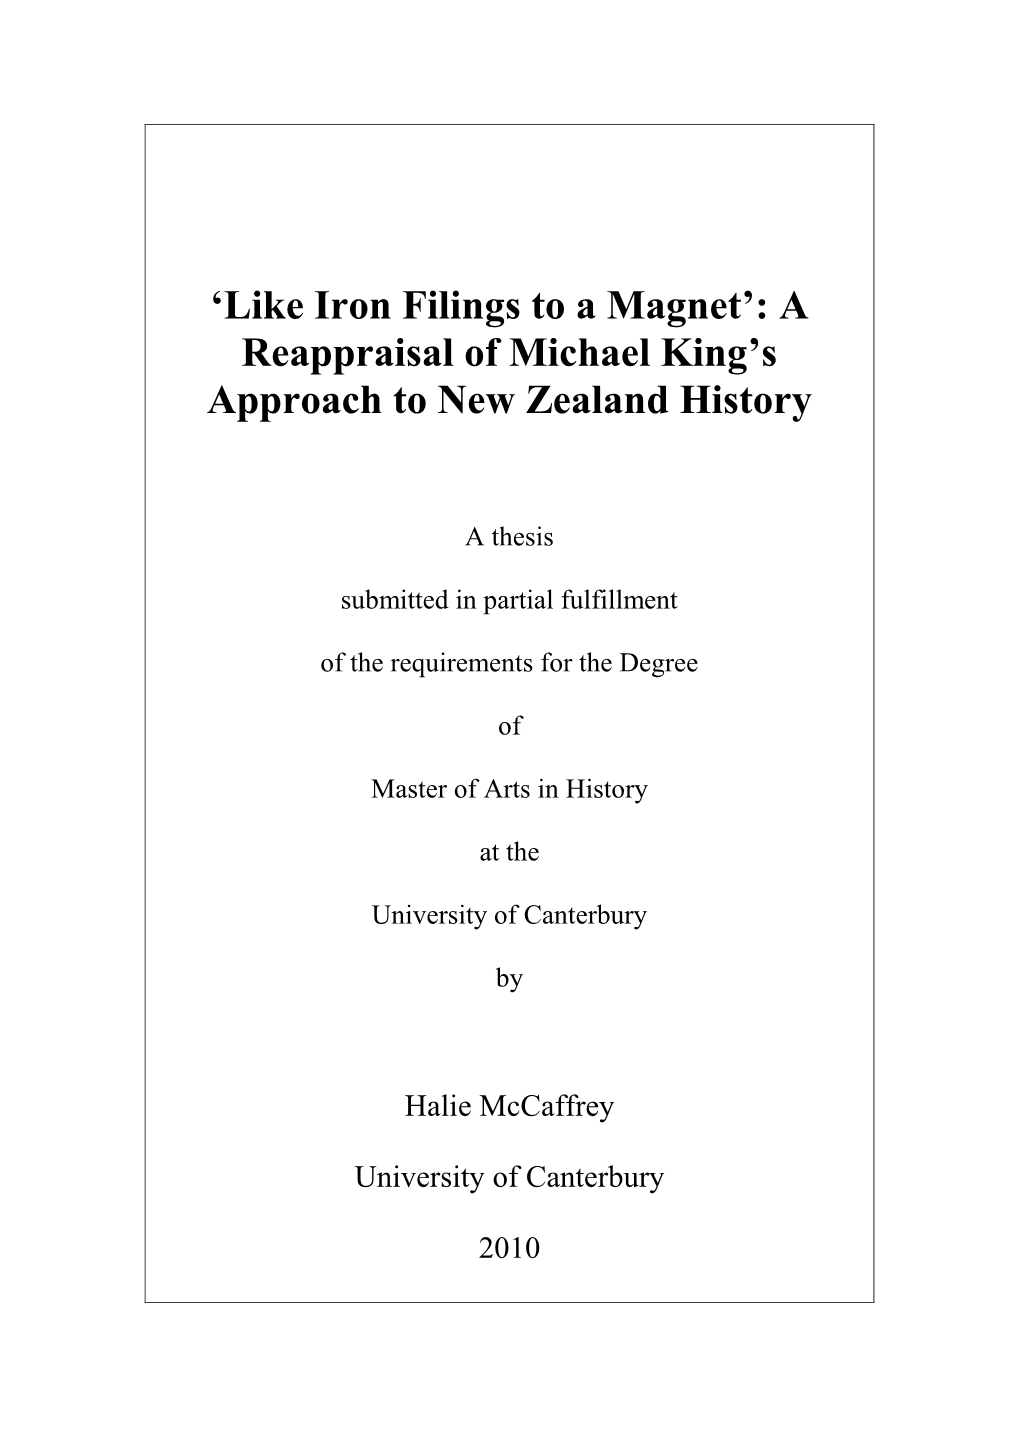 Penguin History of New Zealand P.133